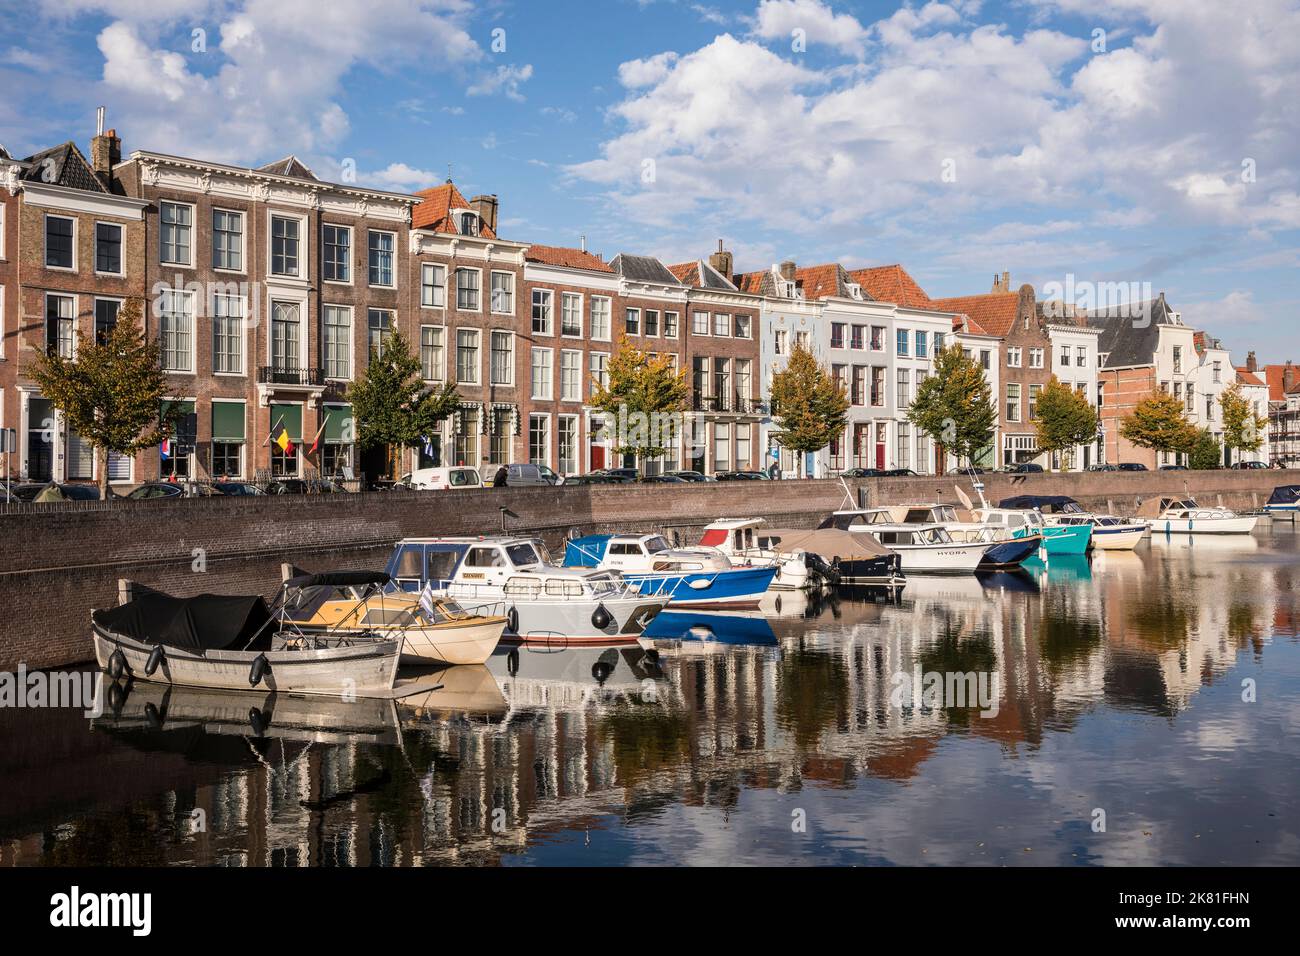 Middelburg auf der Halbinsel Walcheren, Häuser an der Straße Dam, Boote am Prins Hendrikdok Kanal, Zeeland, Niederlande. Middelburg auf Walcheren Stockfoto